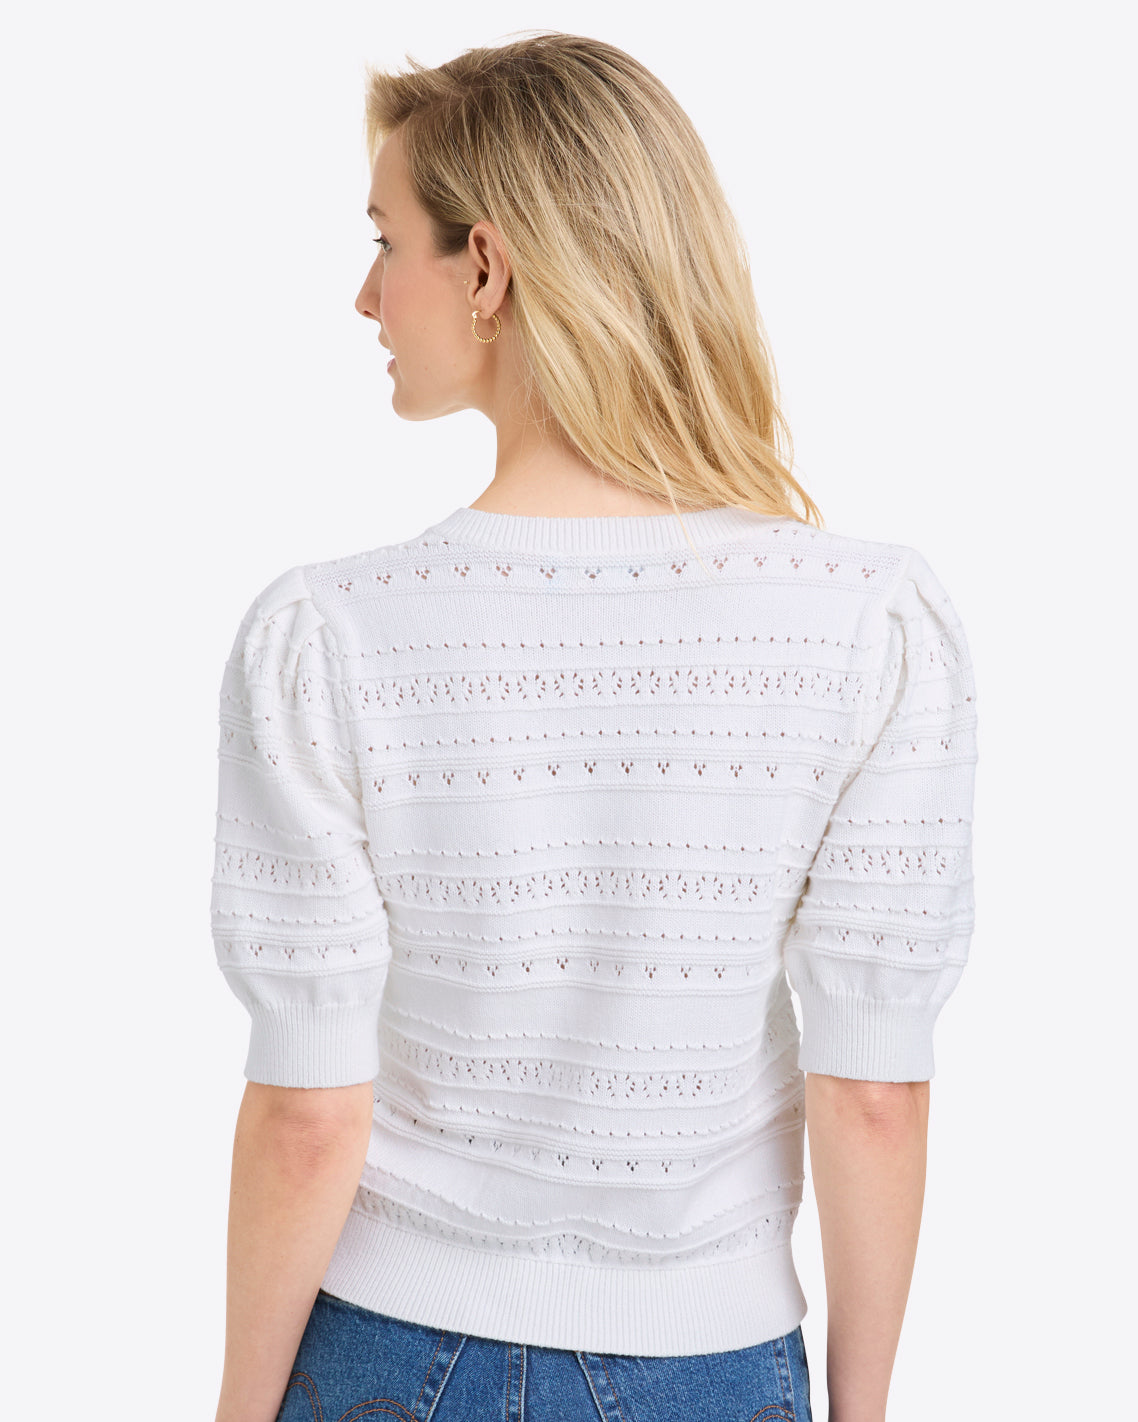 Annabelle Short-Sleeve Sweater in White Pointelle